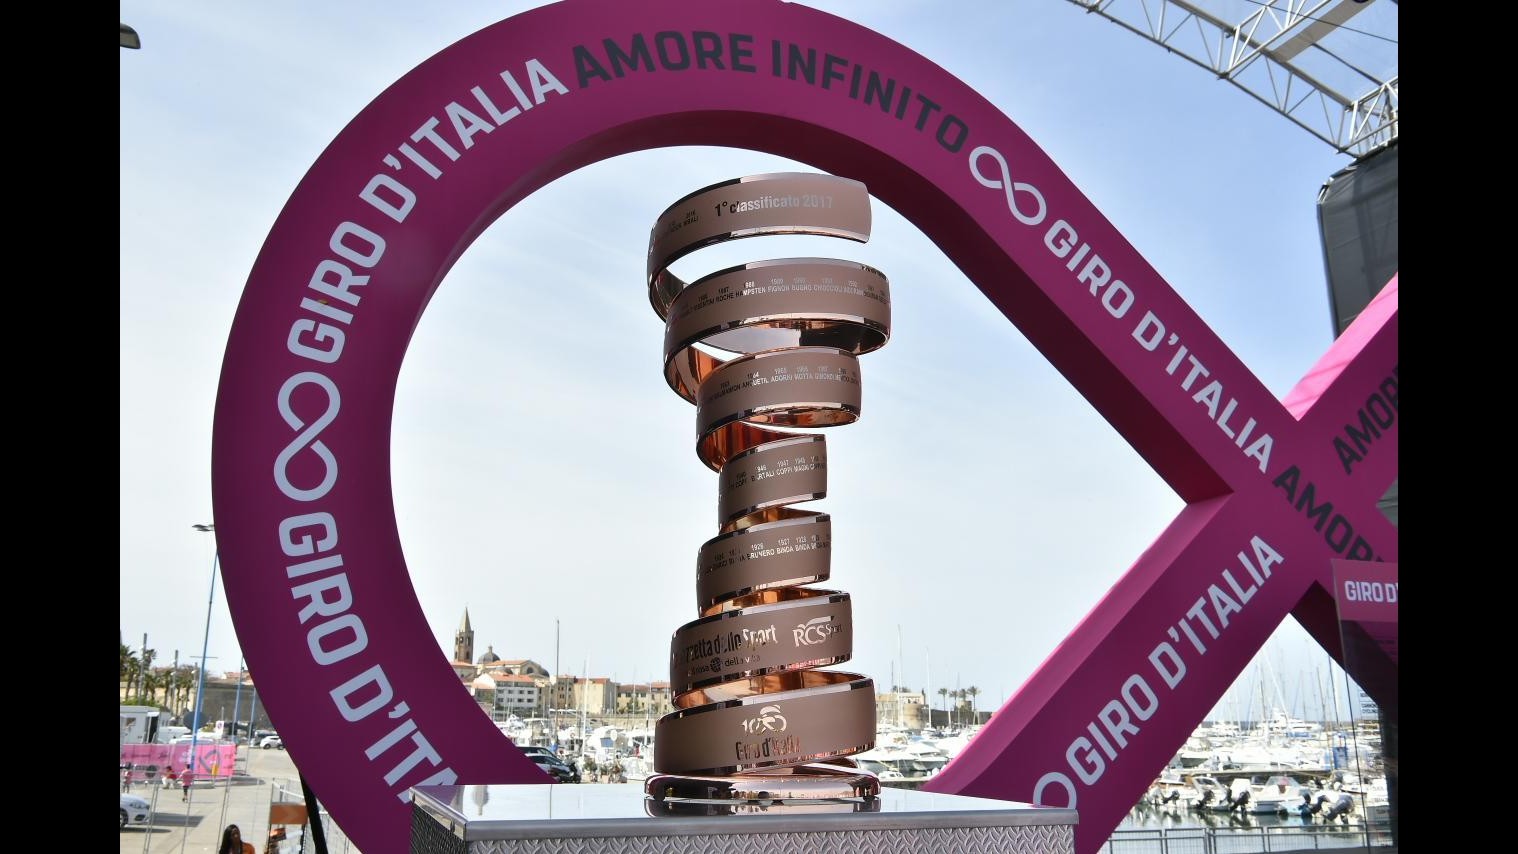 Giro d’Italia, parte dalla Sardegna la centesima edizione